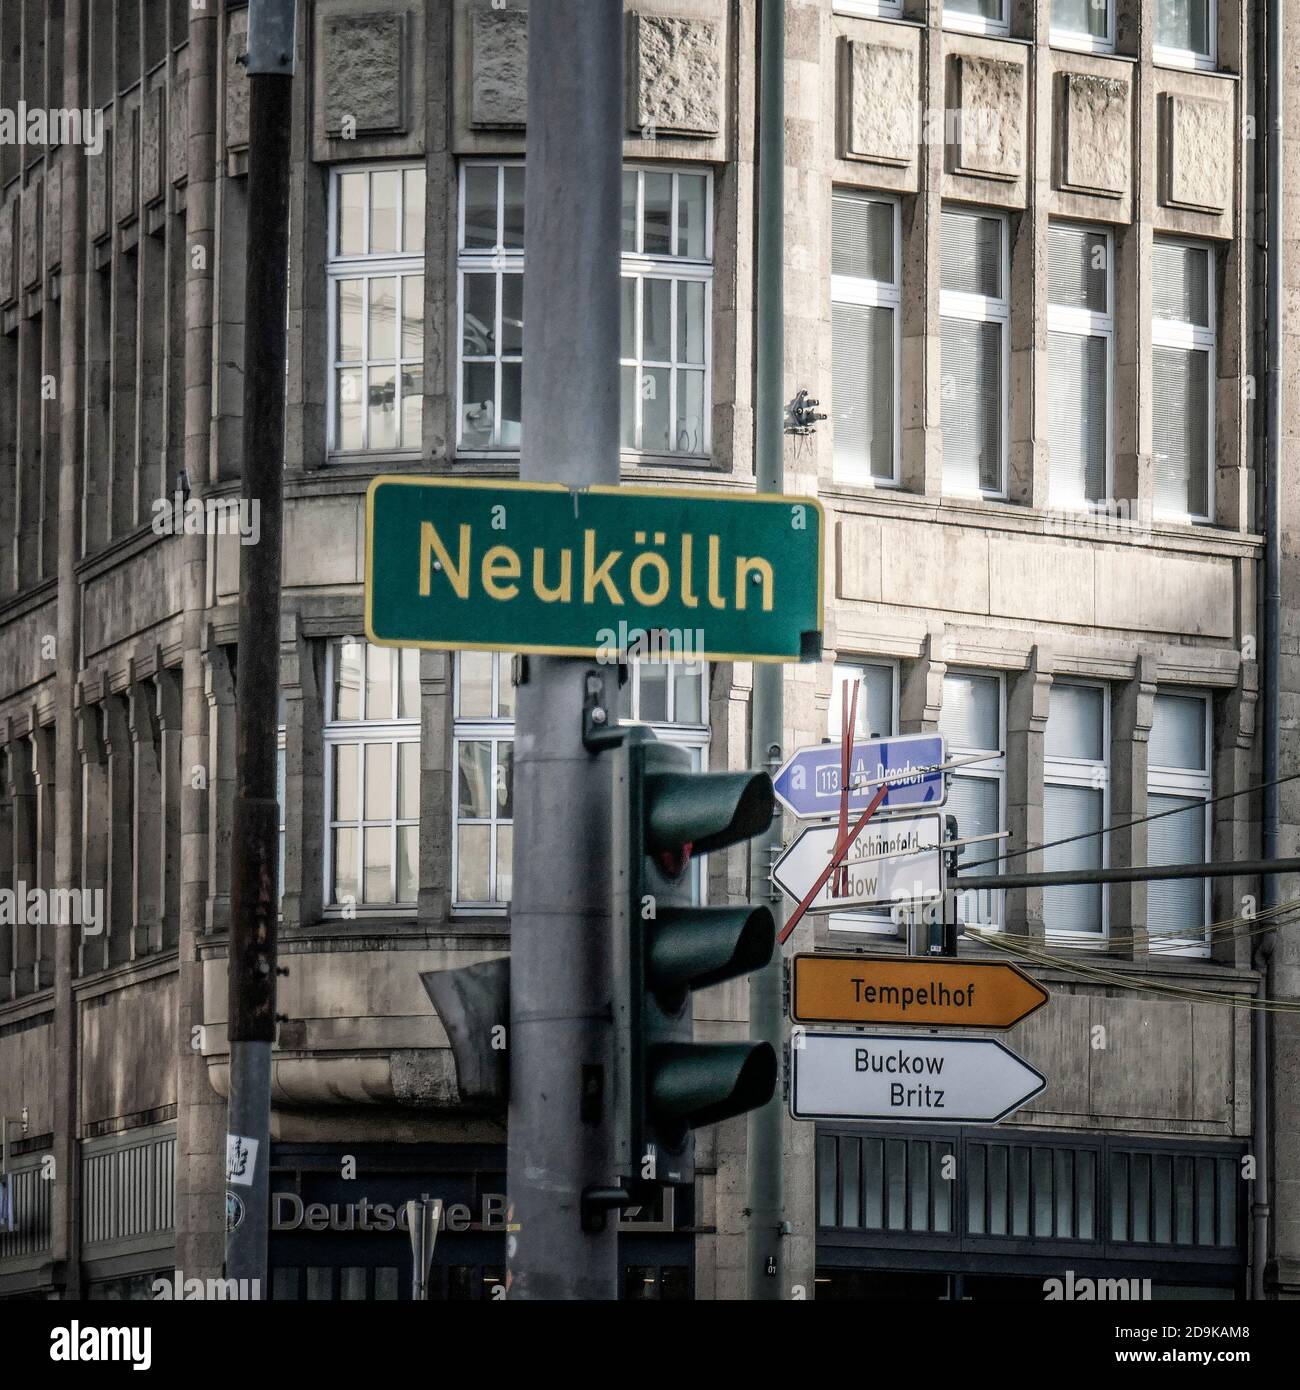 Neukölln street sign, Hermannplatz, Corona Hotspot, traffic light Stock Photo